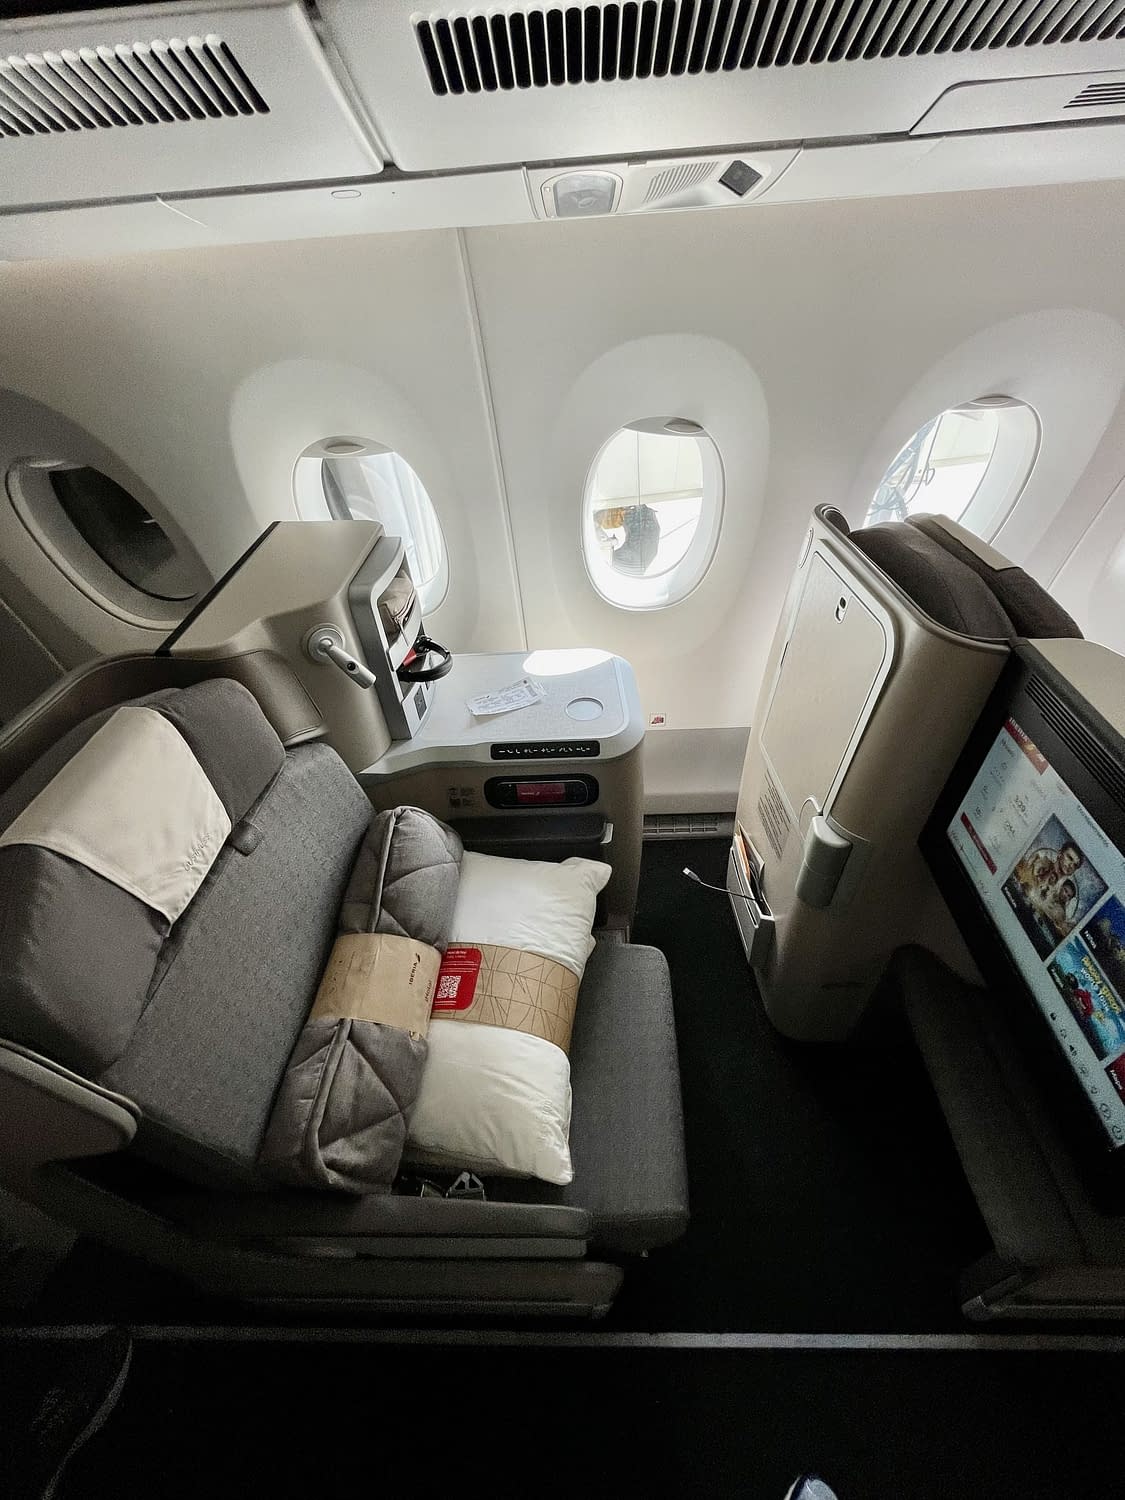 Iberia A350 Business Class Cabin Summer 2022